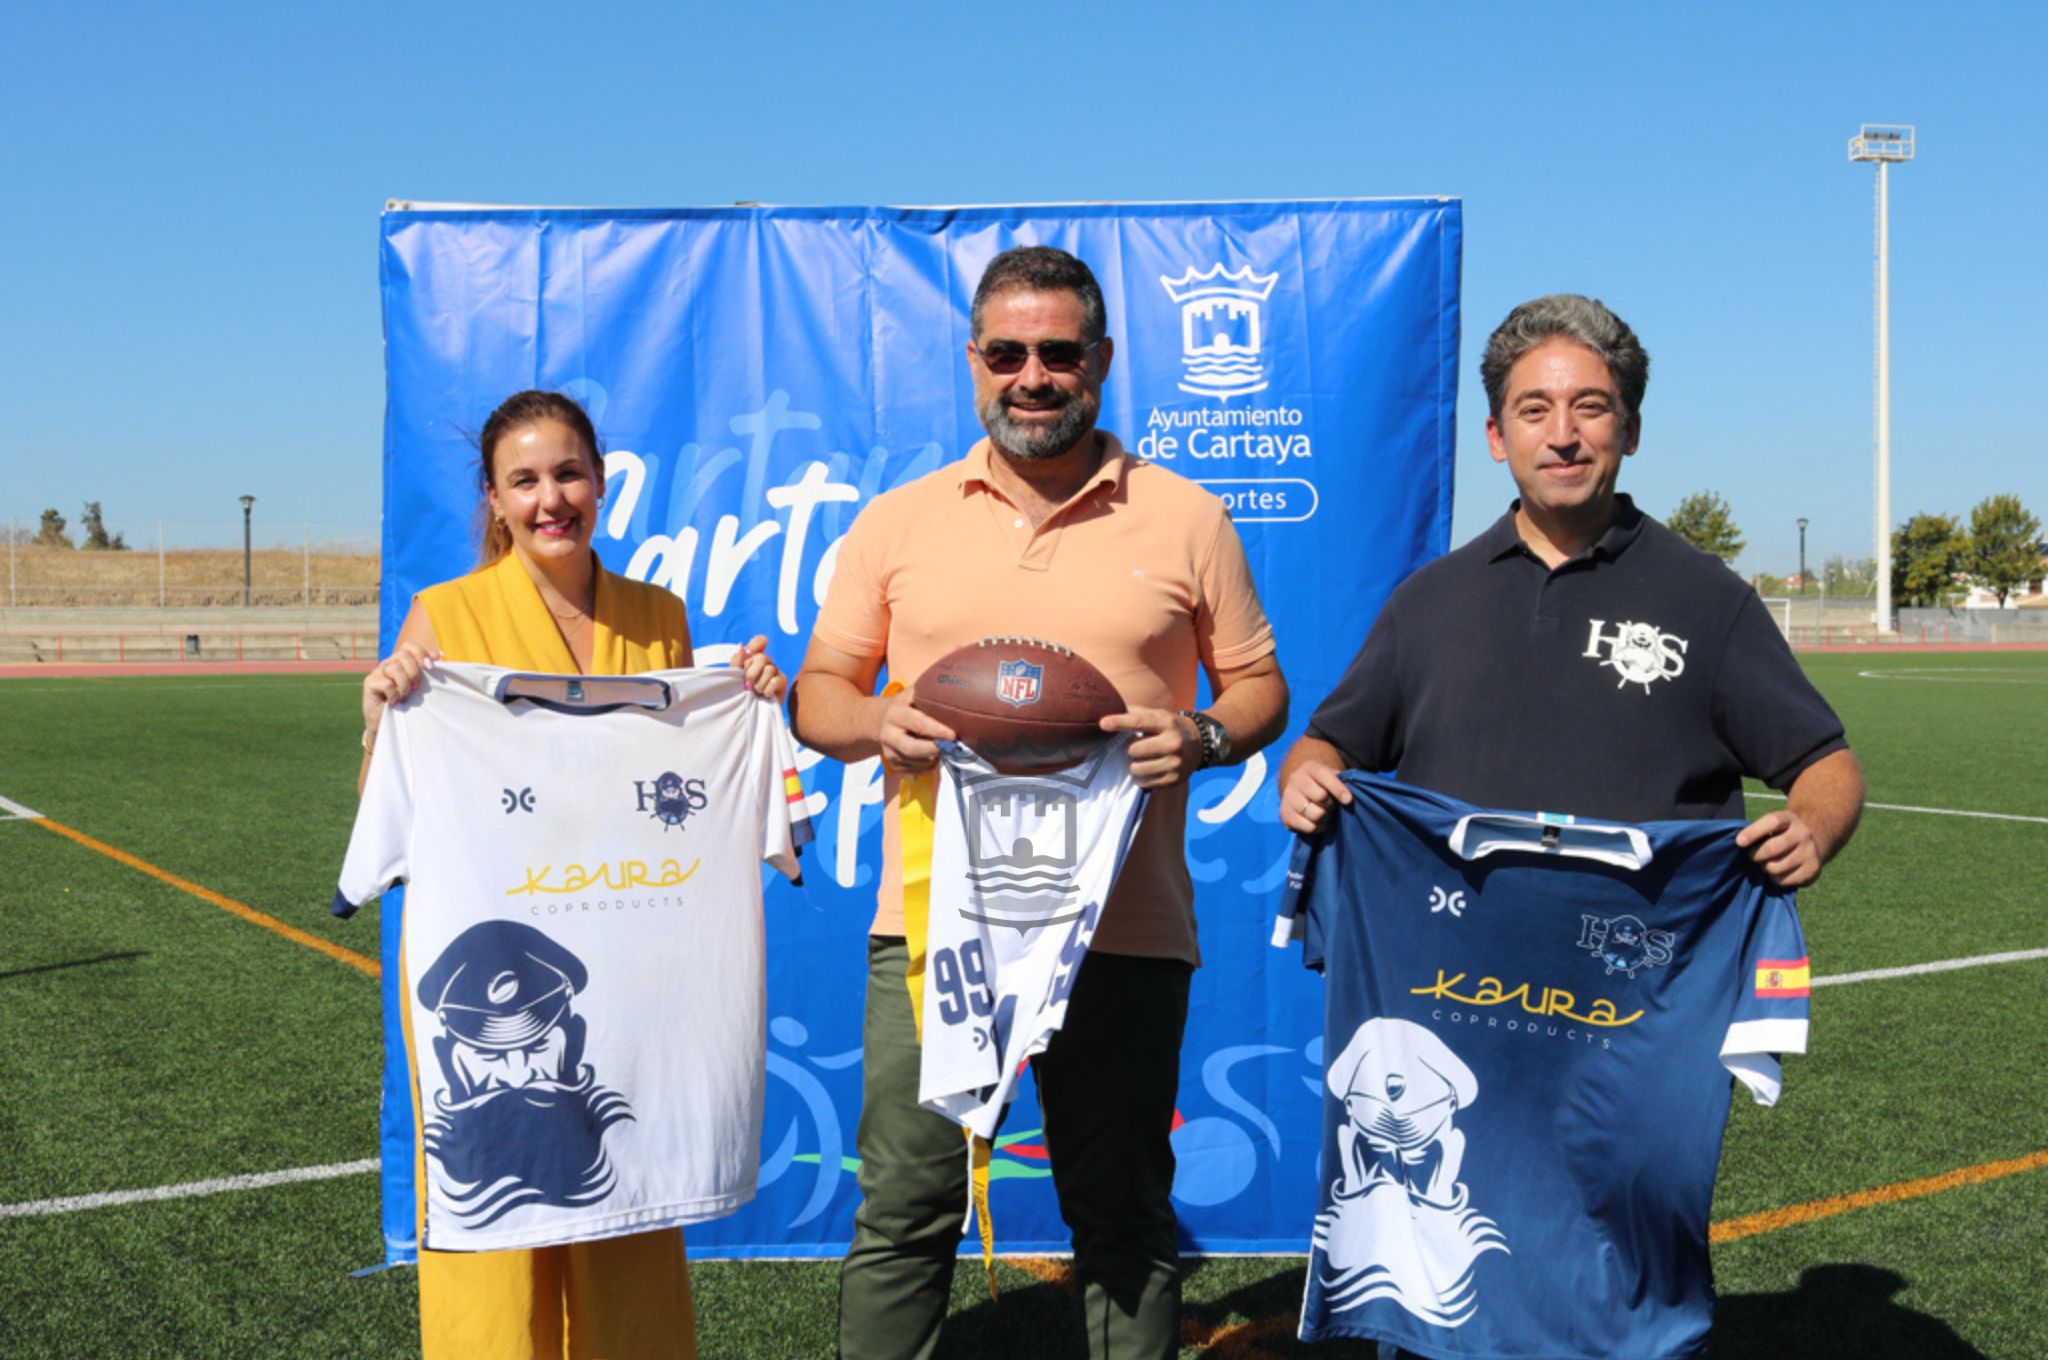 Cartaya acoge el sábado 23 de septiembre el III Torneo Huelva Flag Bowl, con la participación de más de un centenar de deportistas